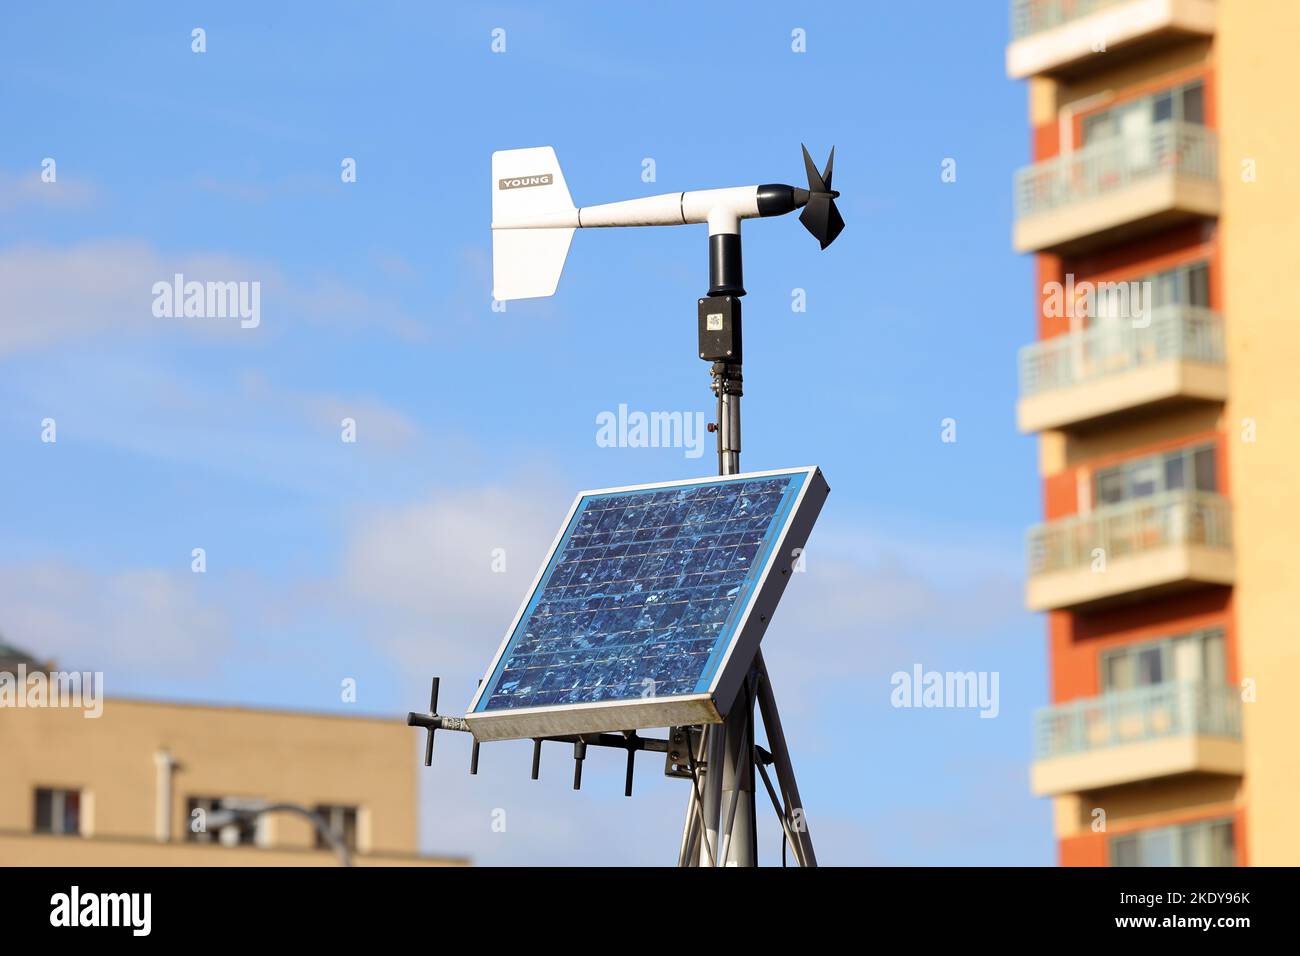 Una estación meteorológica solar con un sensor y una antena del monitor de viento RM Young. El monitor de viento es un anemómetro de estilo molino de viento. Foto de stock